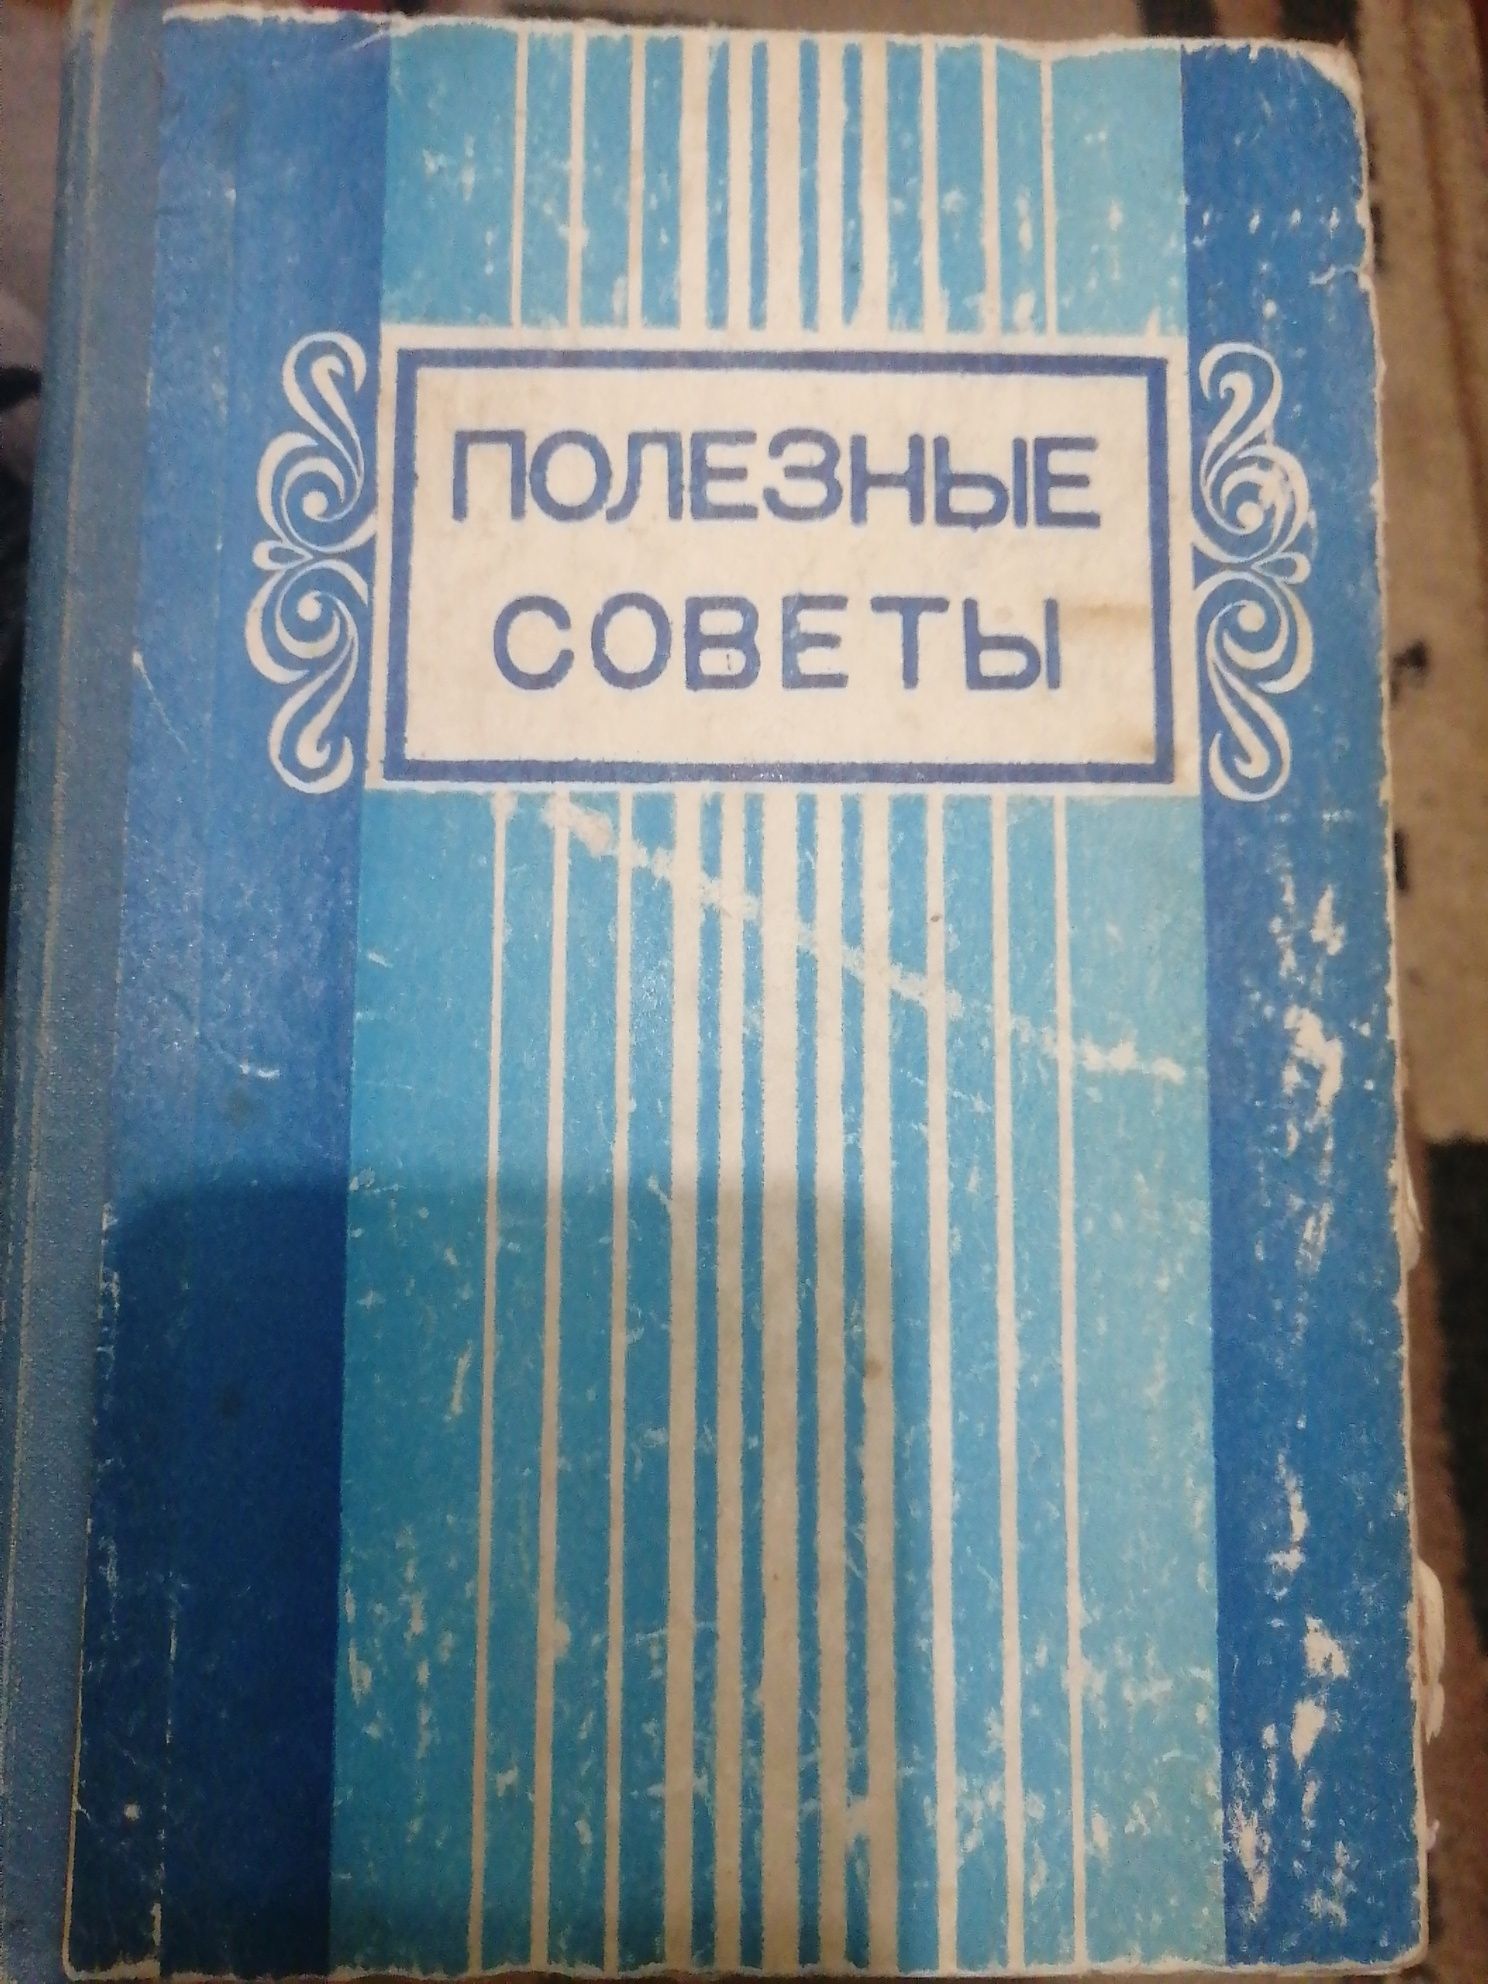 Книга "ПОЛЕЗНЫЕ СОВЕТЫ" 1979год, Узбекская кухня - рецепты.